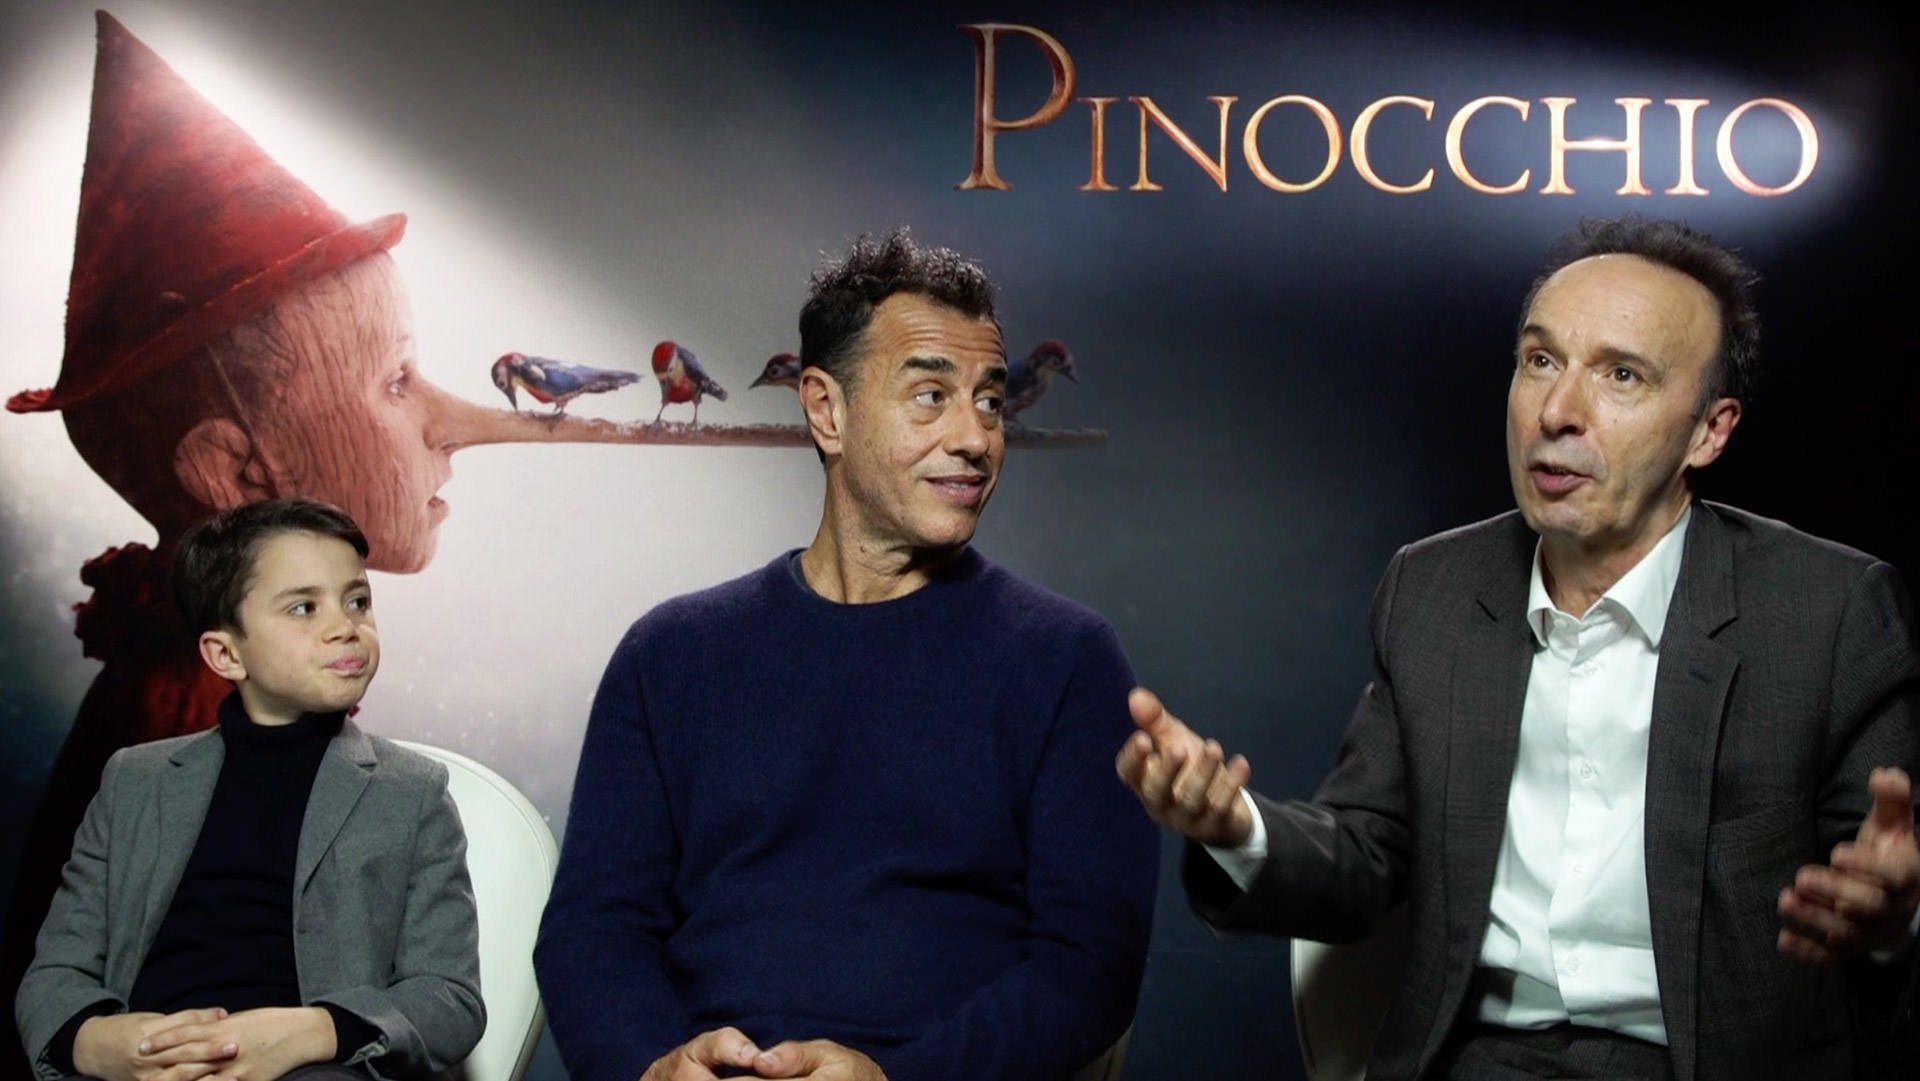 فیلم پینوکیو با بازی روبرتو بنینی در کریسمس ۲۰۲۰ روی پرده سینماهای آمریکا خواهد رفت 1